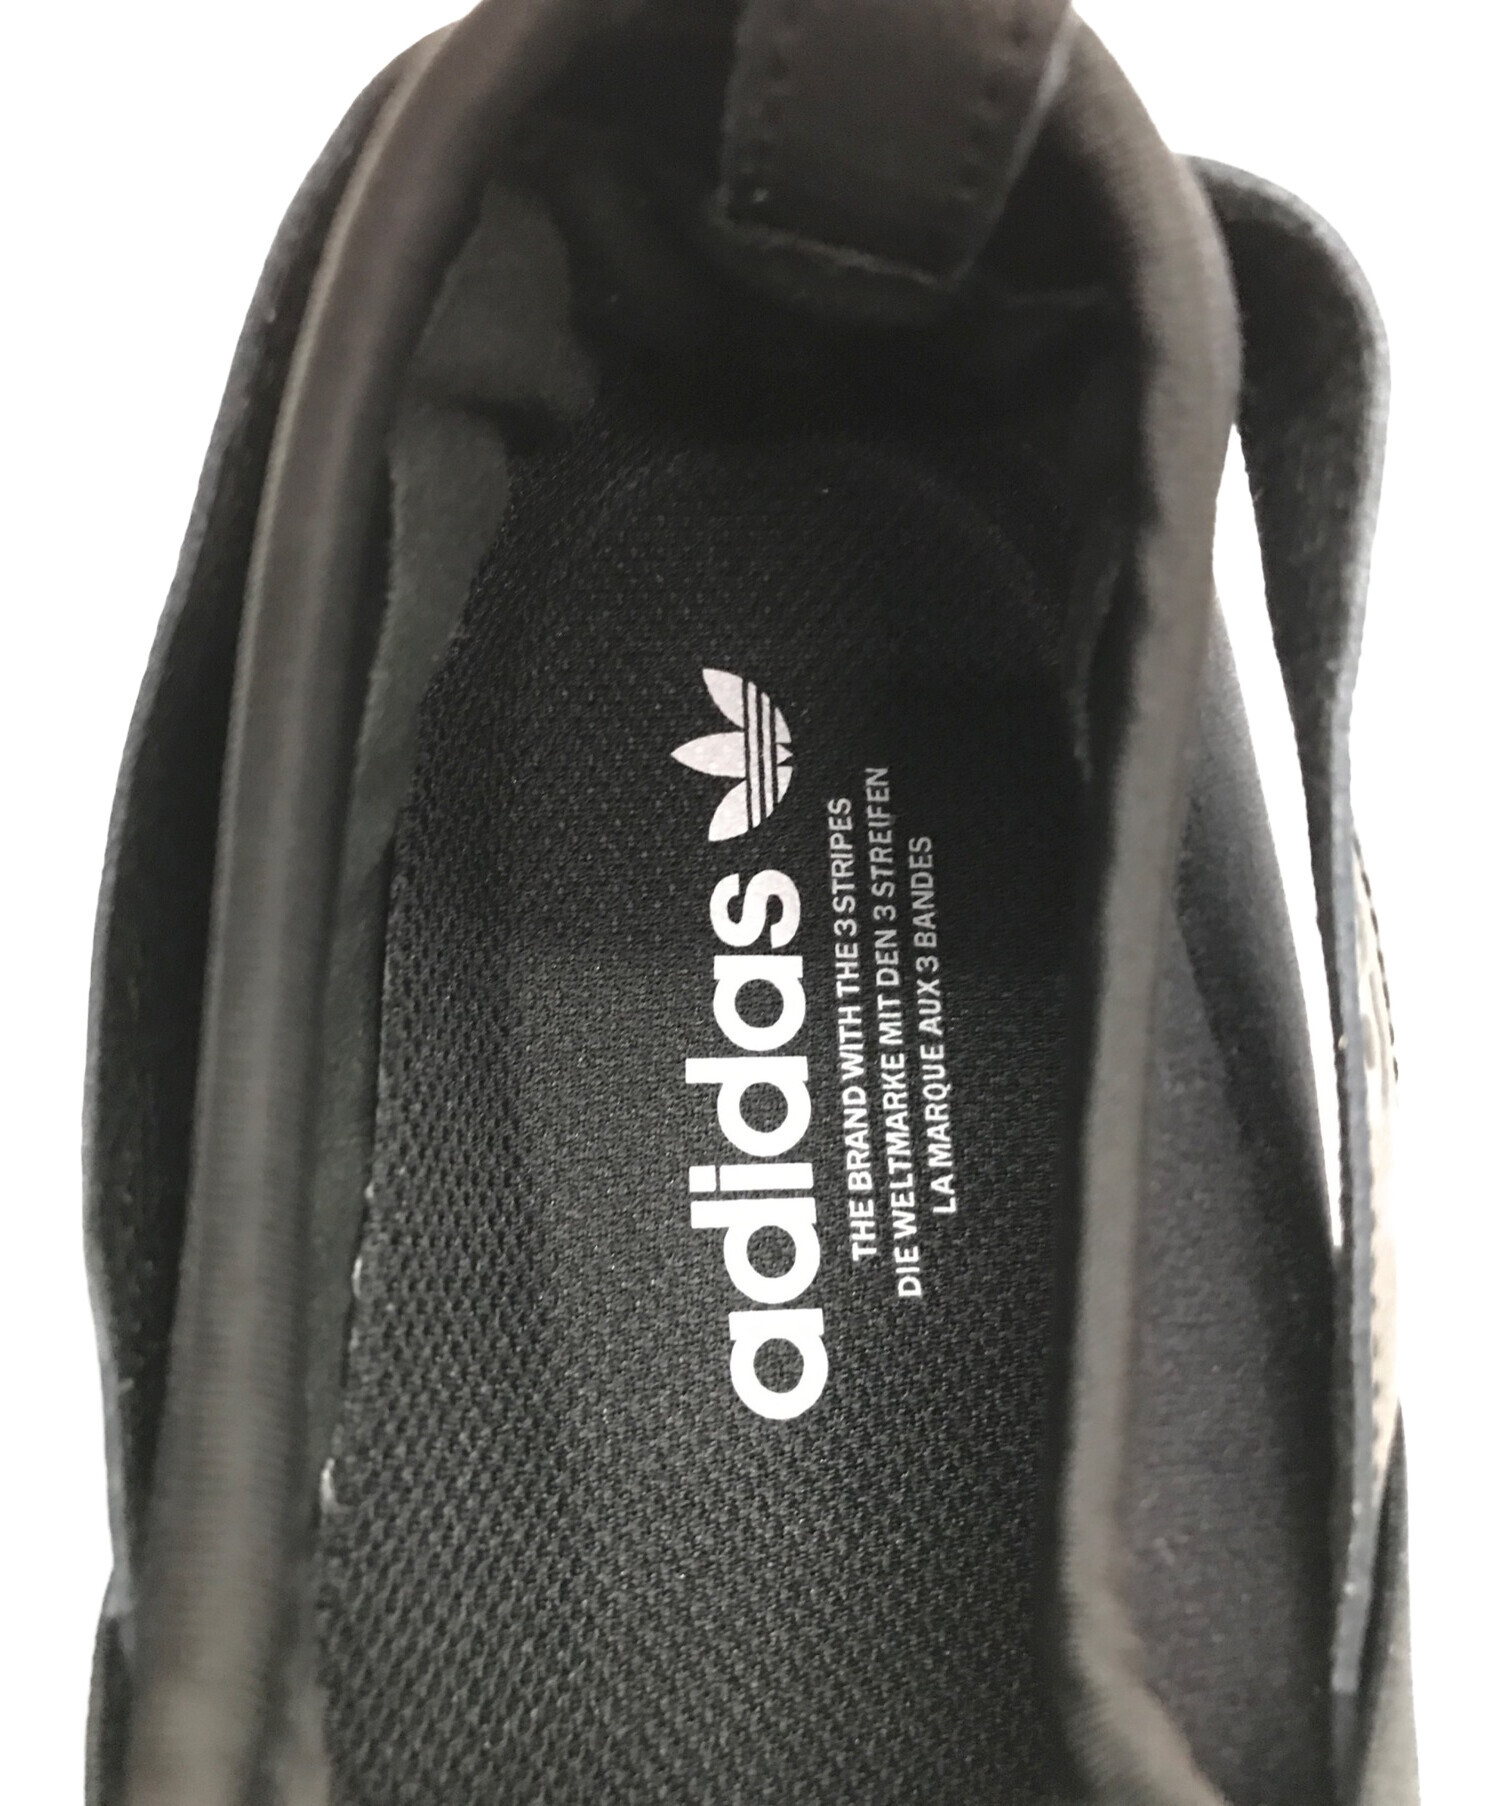 adidas アディダス メンズ スニーカー 【adidas Supe sta 】 サイズ US_9(27.0cm) Thin St ipes  White Black スニーカー